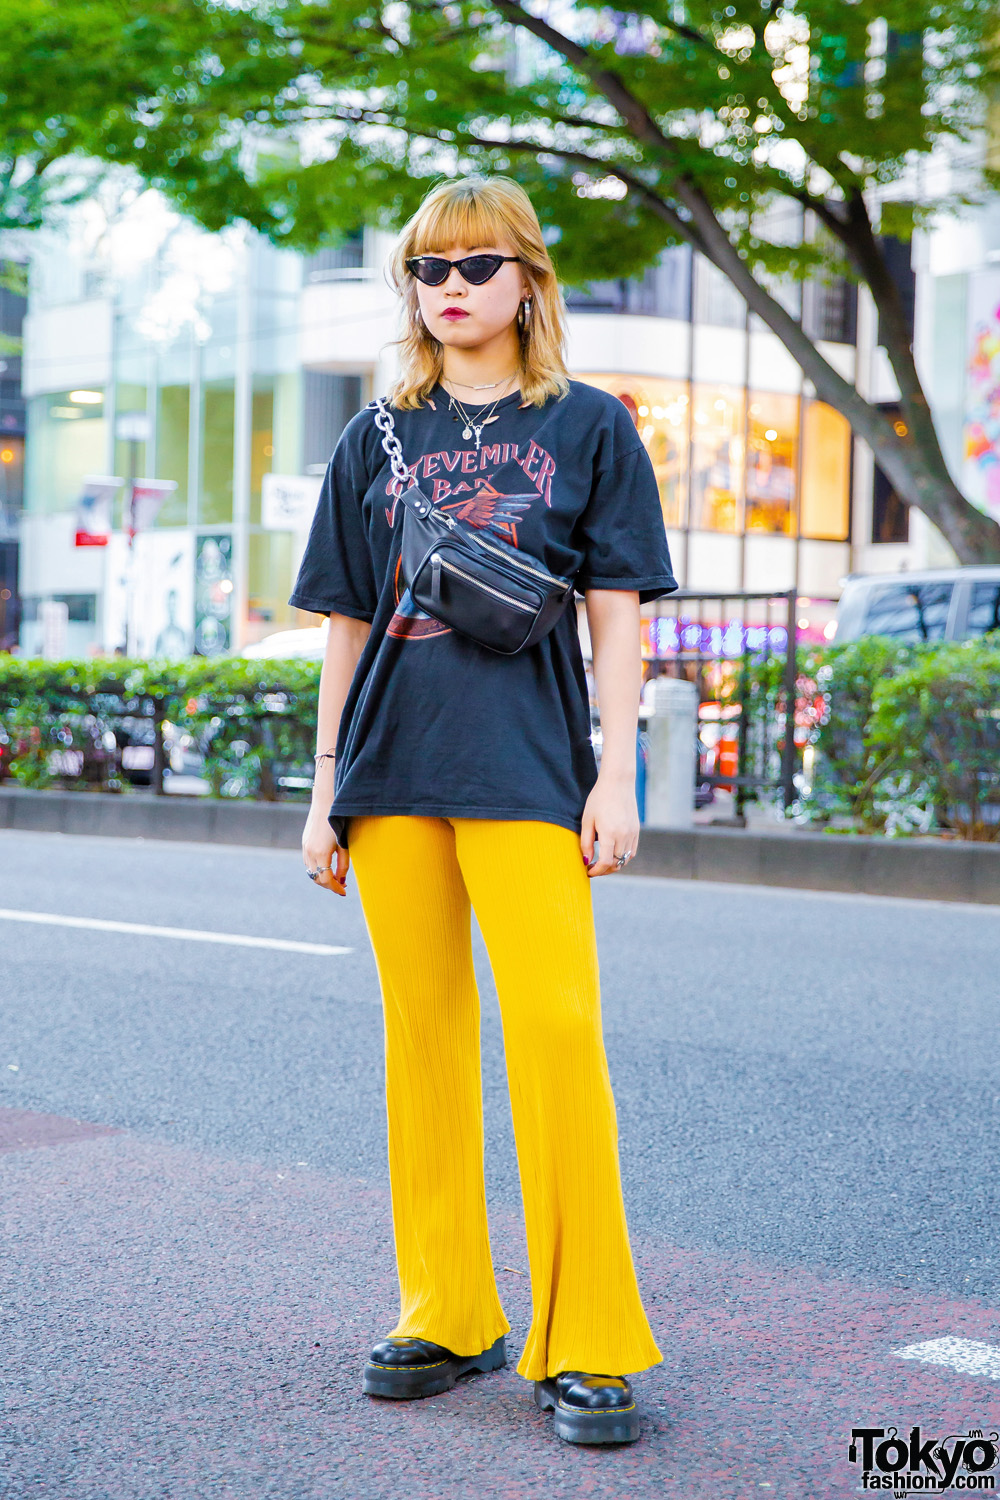 Harajuku Girl w/ Black Band T-Shirt, Yellow Flared Pants & Black Boots